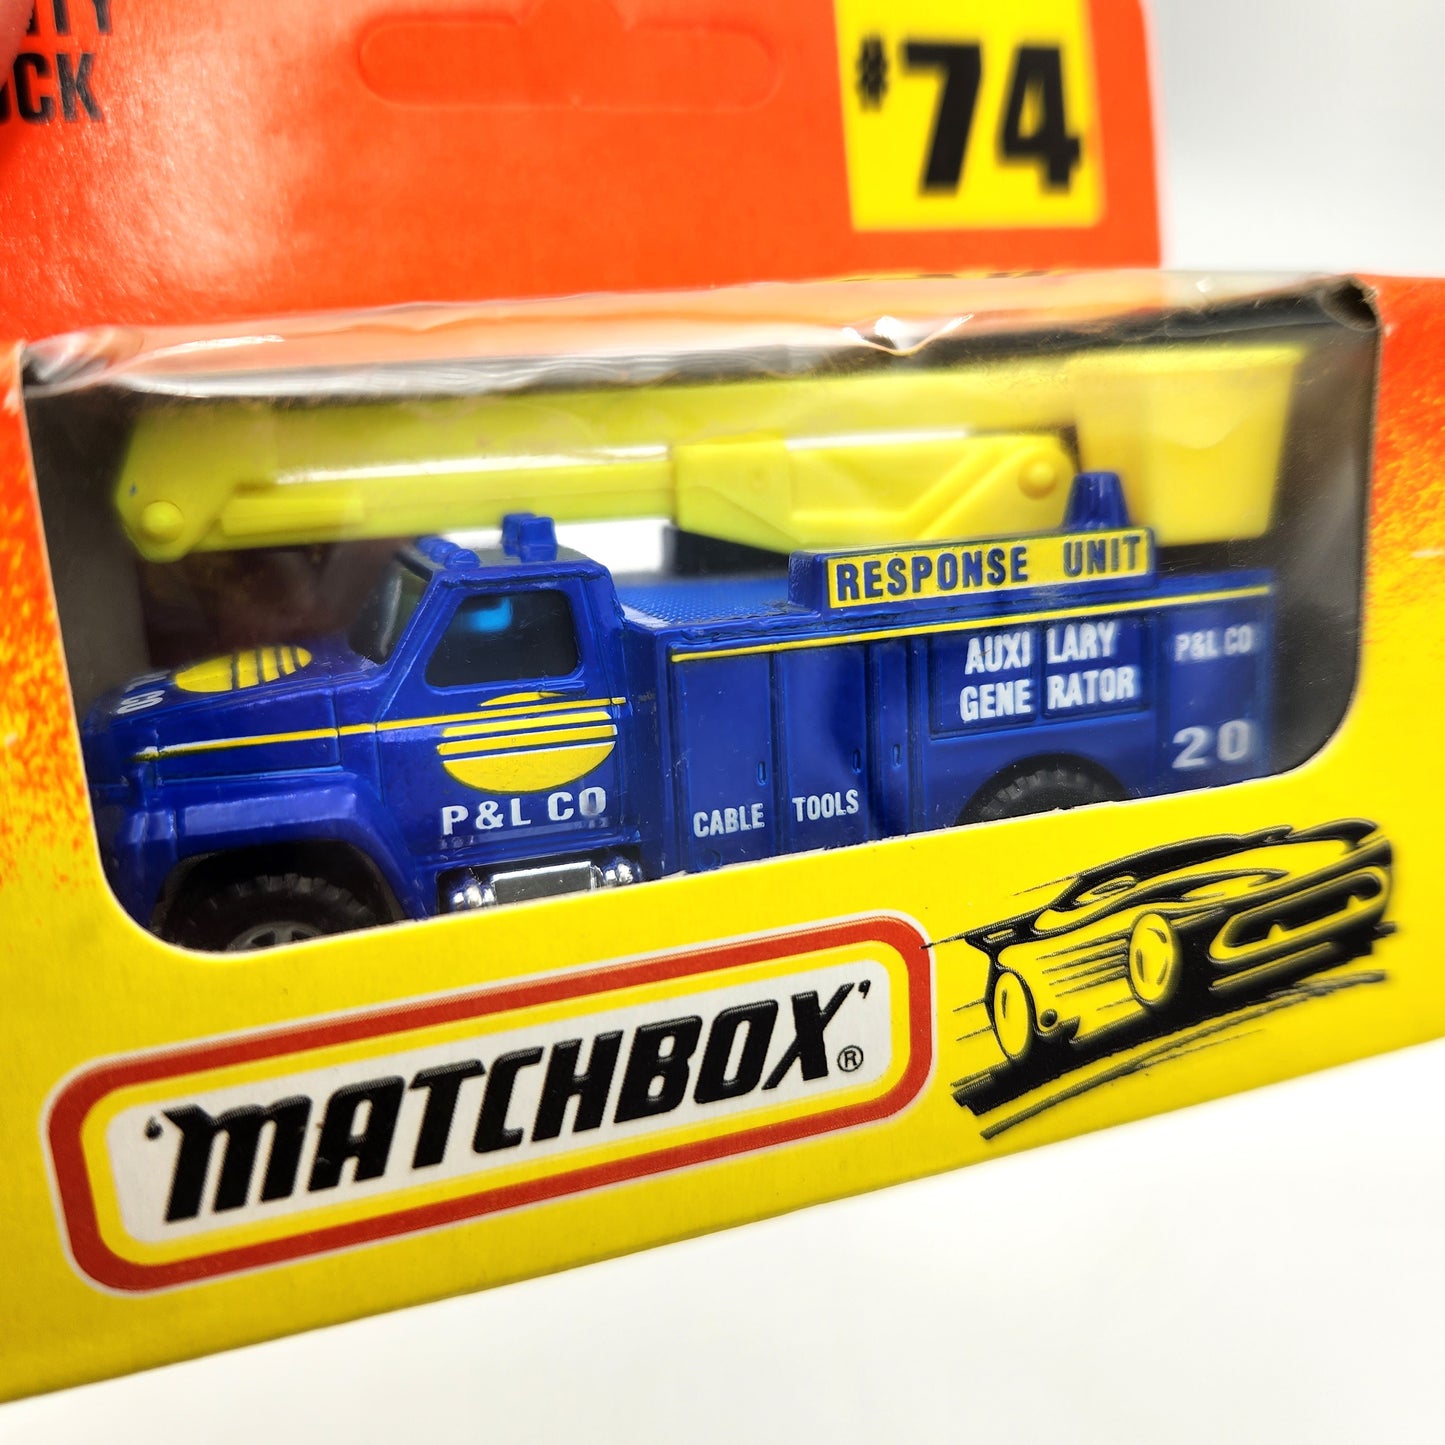 Matchbox - Utility Truck 'P&L Co Response Unit' #74 - 1:64 Scale